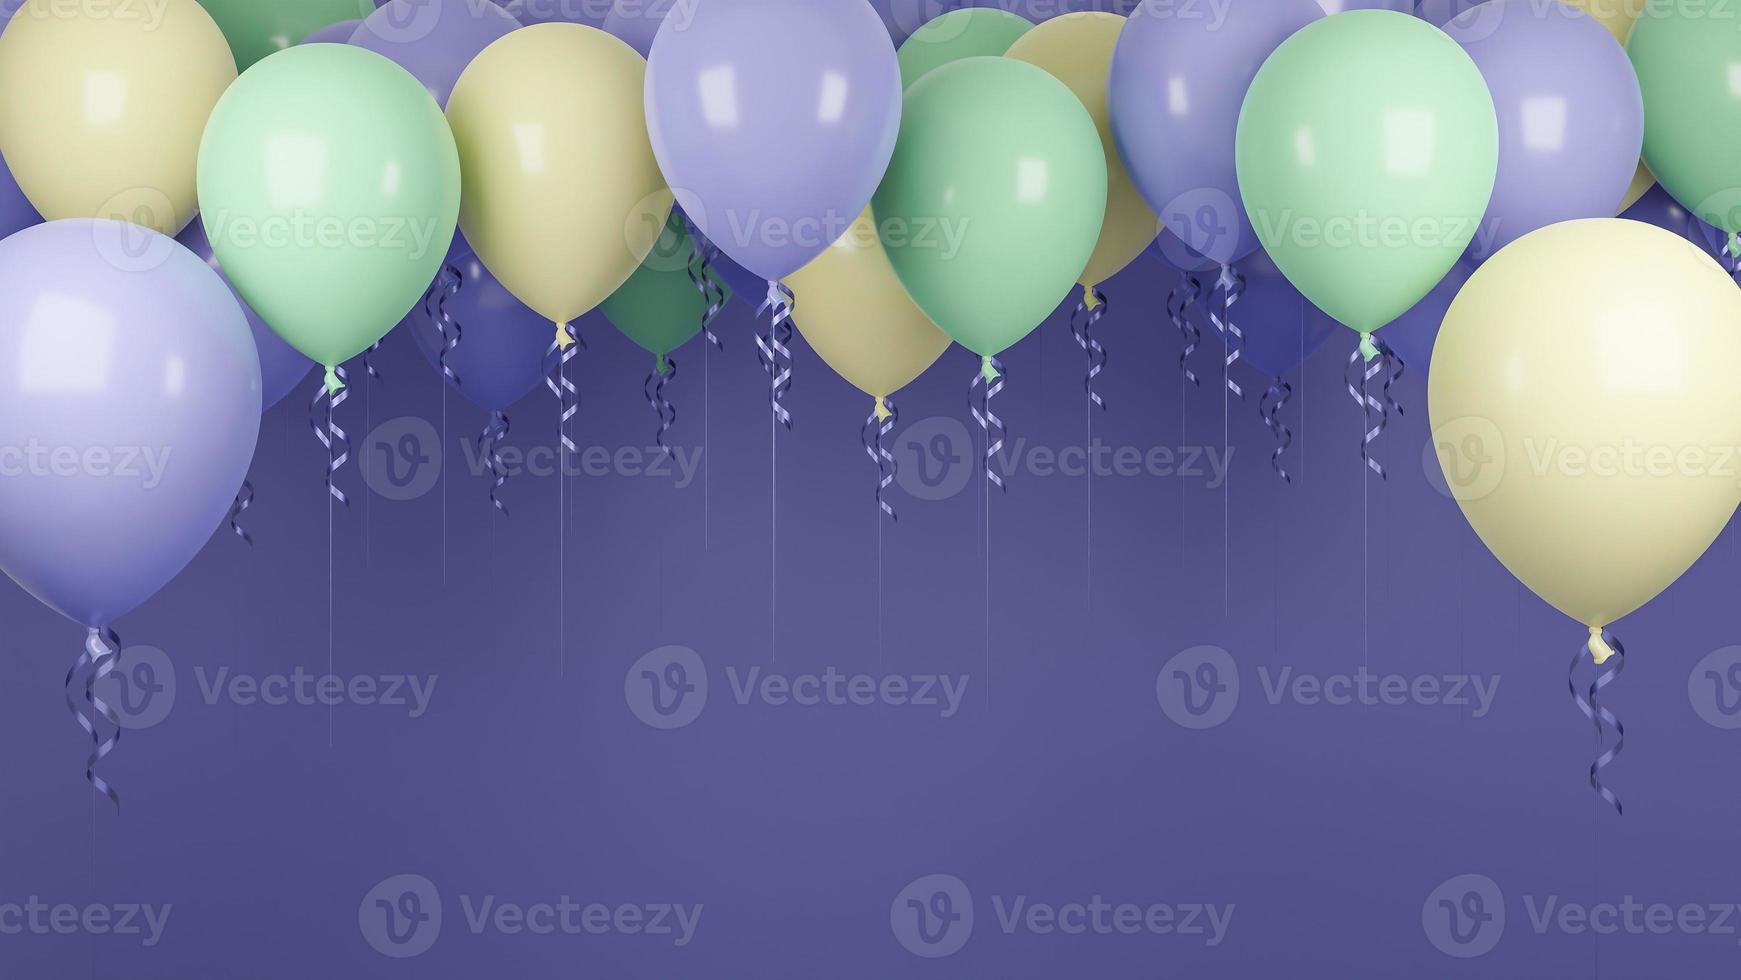 multi gekleurde ballonnen drijvend in paarse pastel background.verjaardagsfeestje en nieuwjaar concept. 3D-model en illustratie. foto